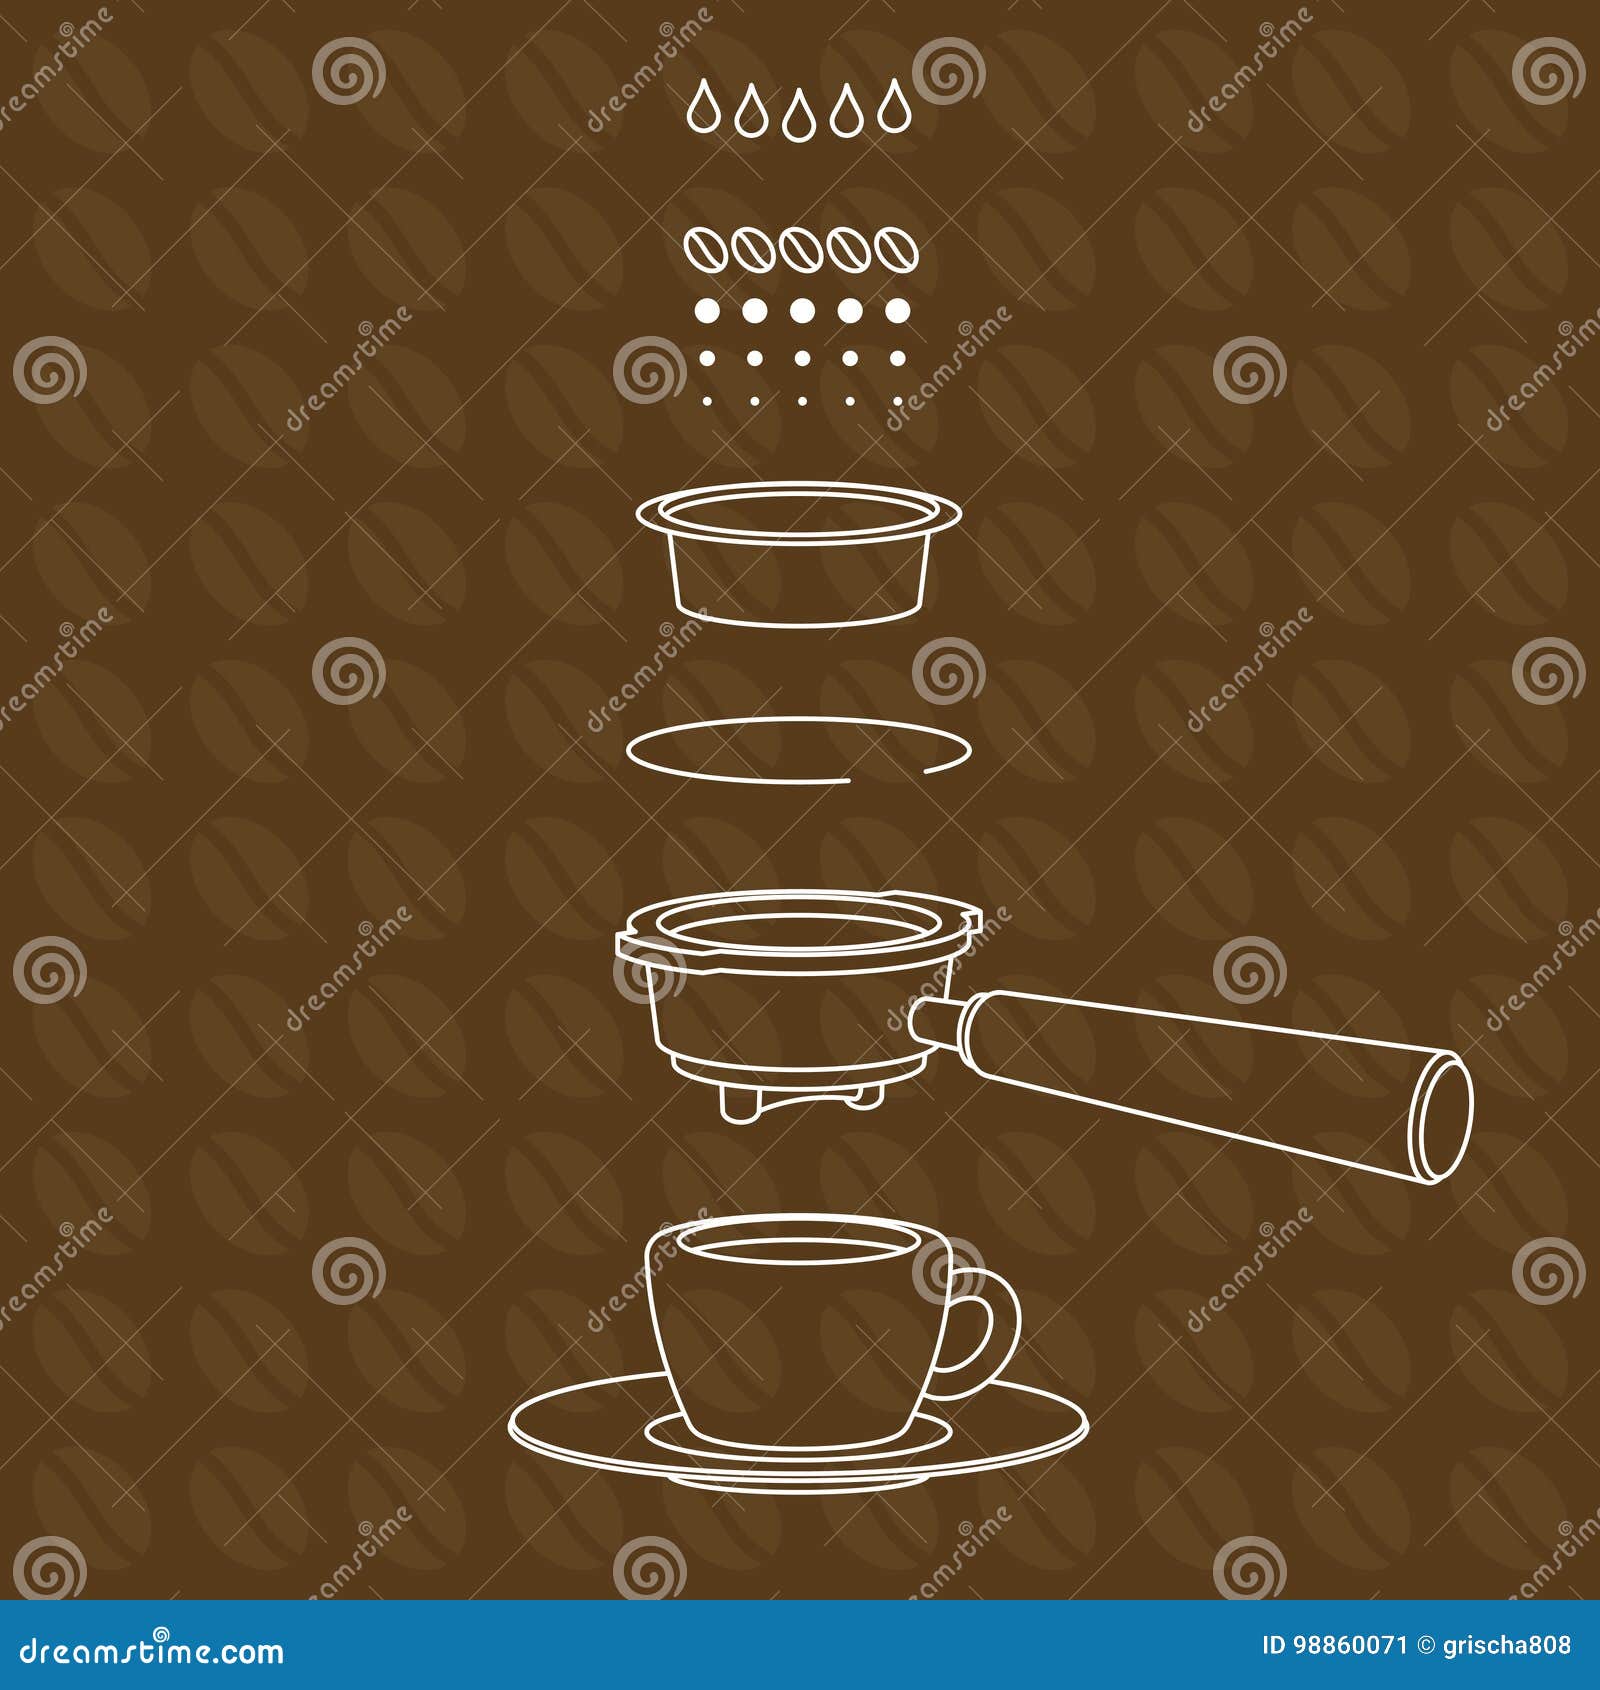 espresso brewing scheme on coffee beans pattern